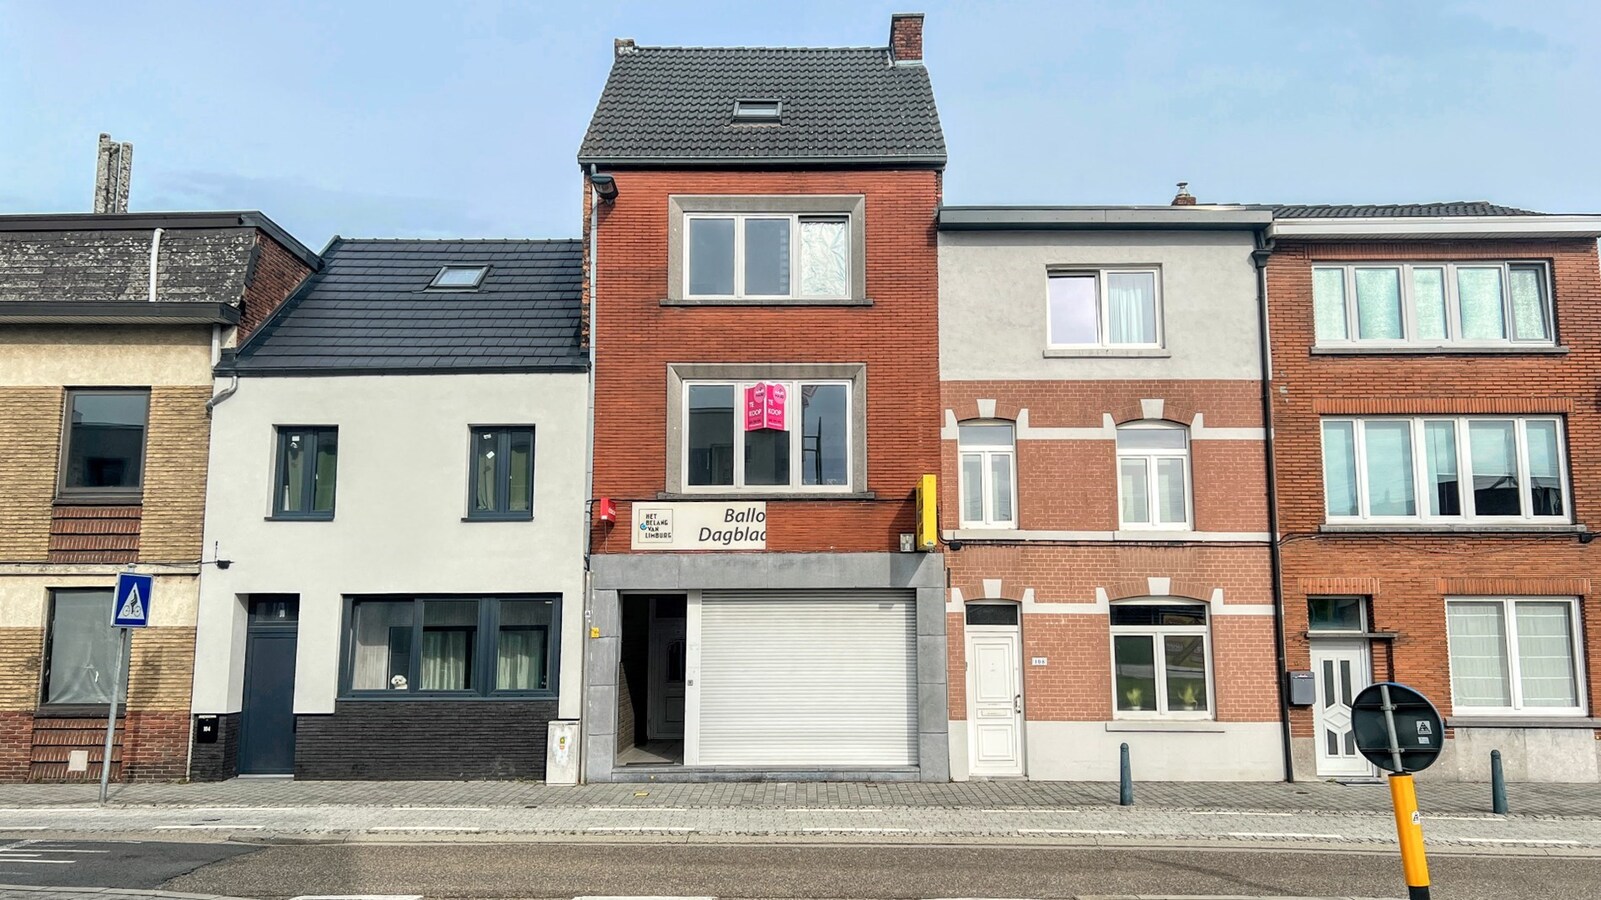 Handelspand met appartement op toplocatie vlakbij centrum Hasselt 